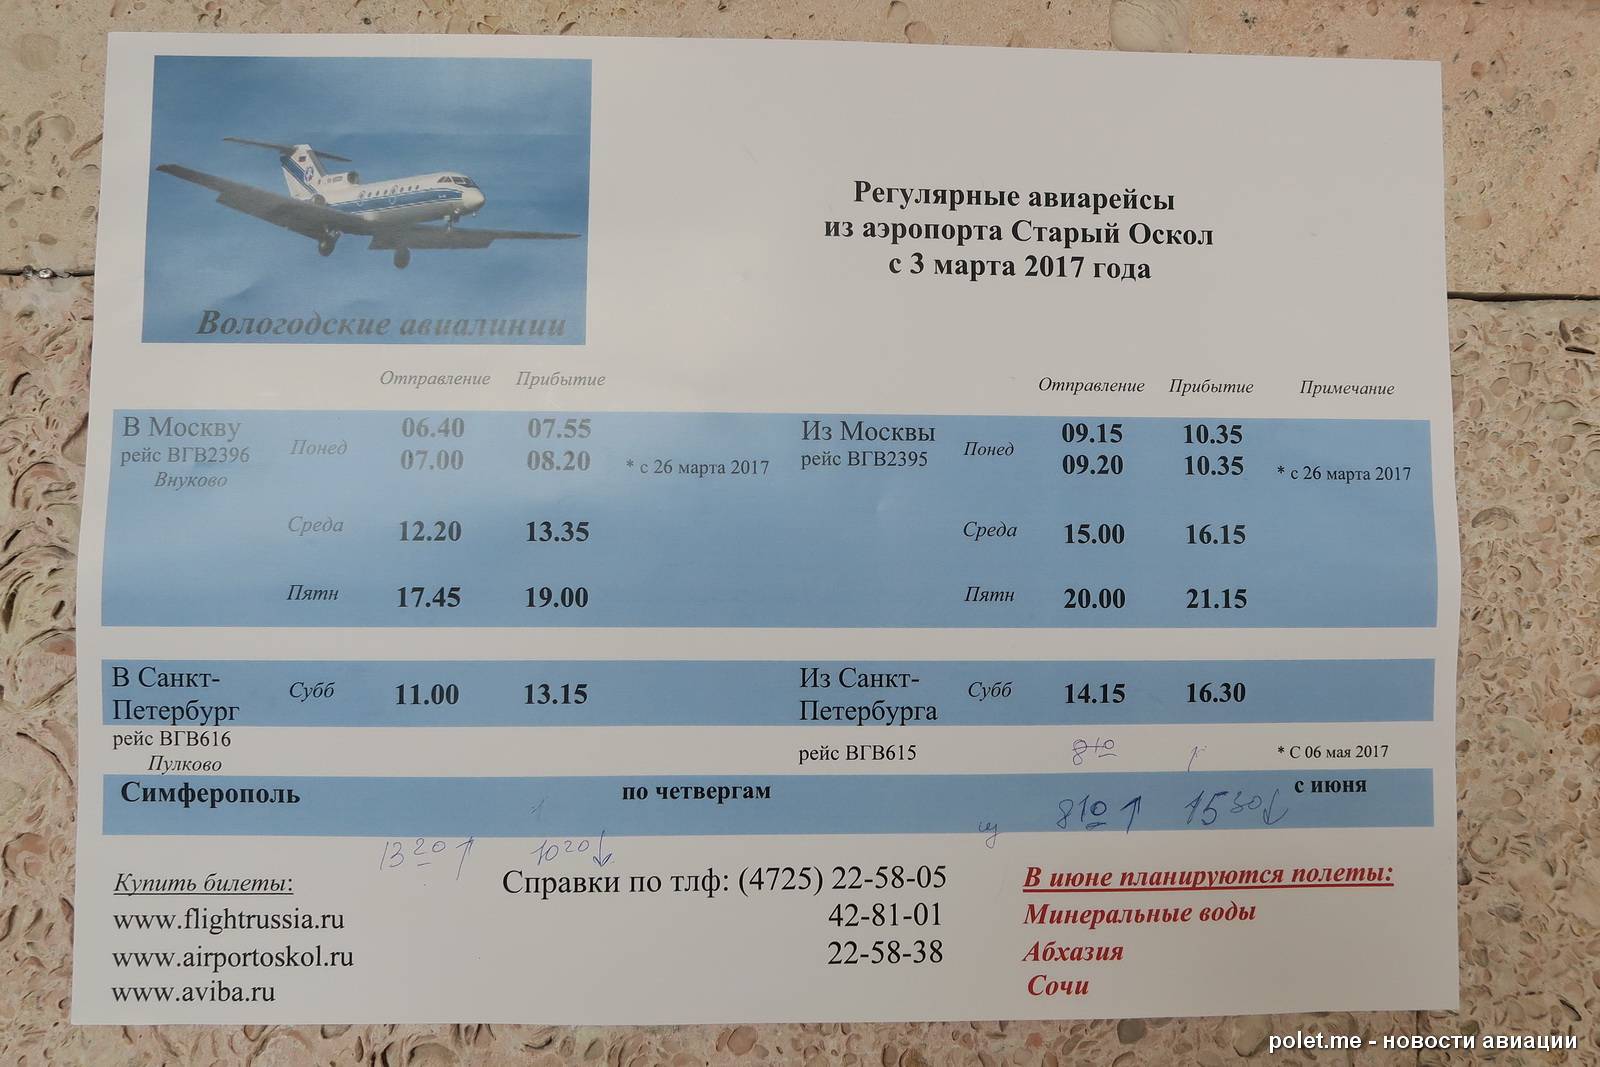 Белгород новороссийск расписание. Билеты на самолет. Старые билеты на самолет. Аэропорт аэропорт старый Оскол. Расписание авиабилетов.